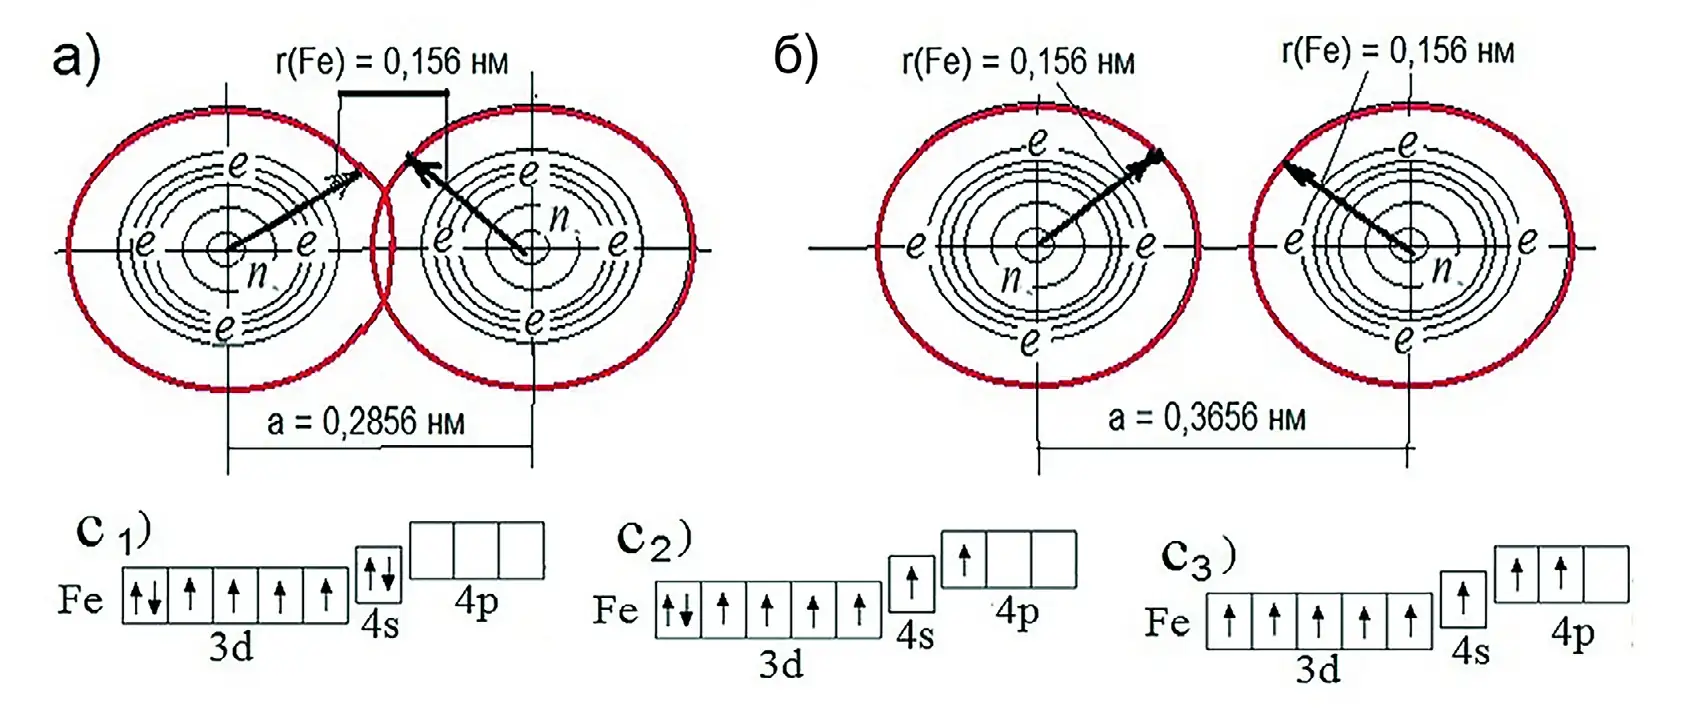 Рис. 3 Схема проекции объединения атомов альфа-железо α-Fe и электронных конфигураций атомов железа Fe: a и б – соответственно схема объединения атомов α-Fe при расстоянии между центрами a меньше и больше величины ковалентного радиуса r; е – электроны на энергетических орбиталях атомов; с1, c2, c3 – энергетические уровни валентных электронов атома α-Fe в различных формах; r(Fe) – ковалентный радиус атома; 3d, 4s, 4p – энергетические субподуровни обращения валентных электронов вокруг ядра атома; n – номер энергетического уровня в электрическом поле атома Fig. 3 A schematic projection of alpha-iron atoms (α-Fe) and electronic configurations of iron atoms (Fe): a and б – respectively a schematic view of the combination of α-Fe atoms when the distance between centers a is less or greater than the value of the covalent radius r; е – electrons in the energy orbitals of atoms; с1, c2, c – energy levels of valence electrons of α-Fe atom in different forms; r(Fe) – the covalent radius of atom; 3d, 4s, 4p - energy sub-sub-levels of valence electrons circulation around the atom nucleus; n – the number of energy level in the atom's electric field